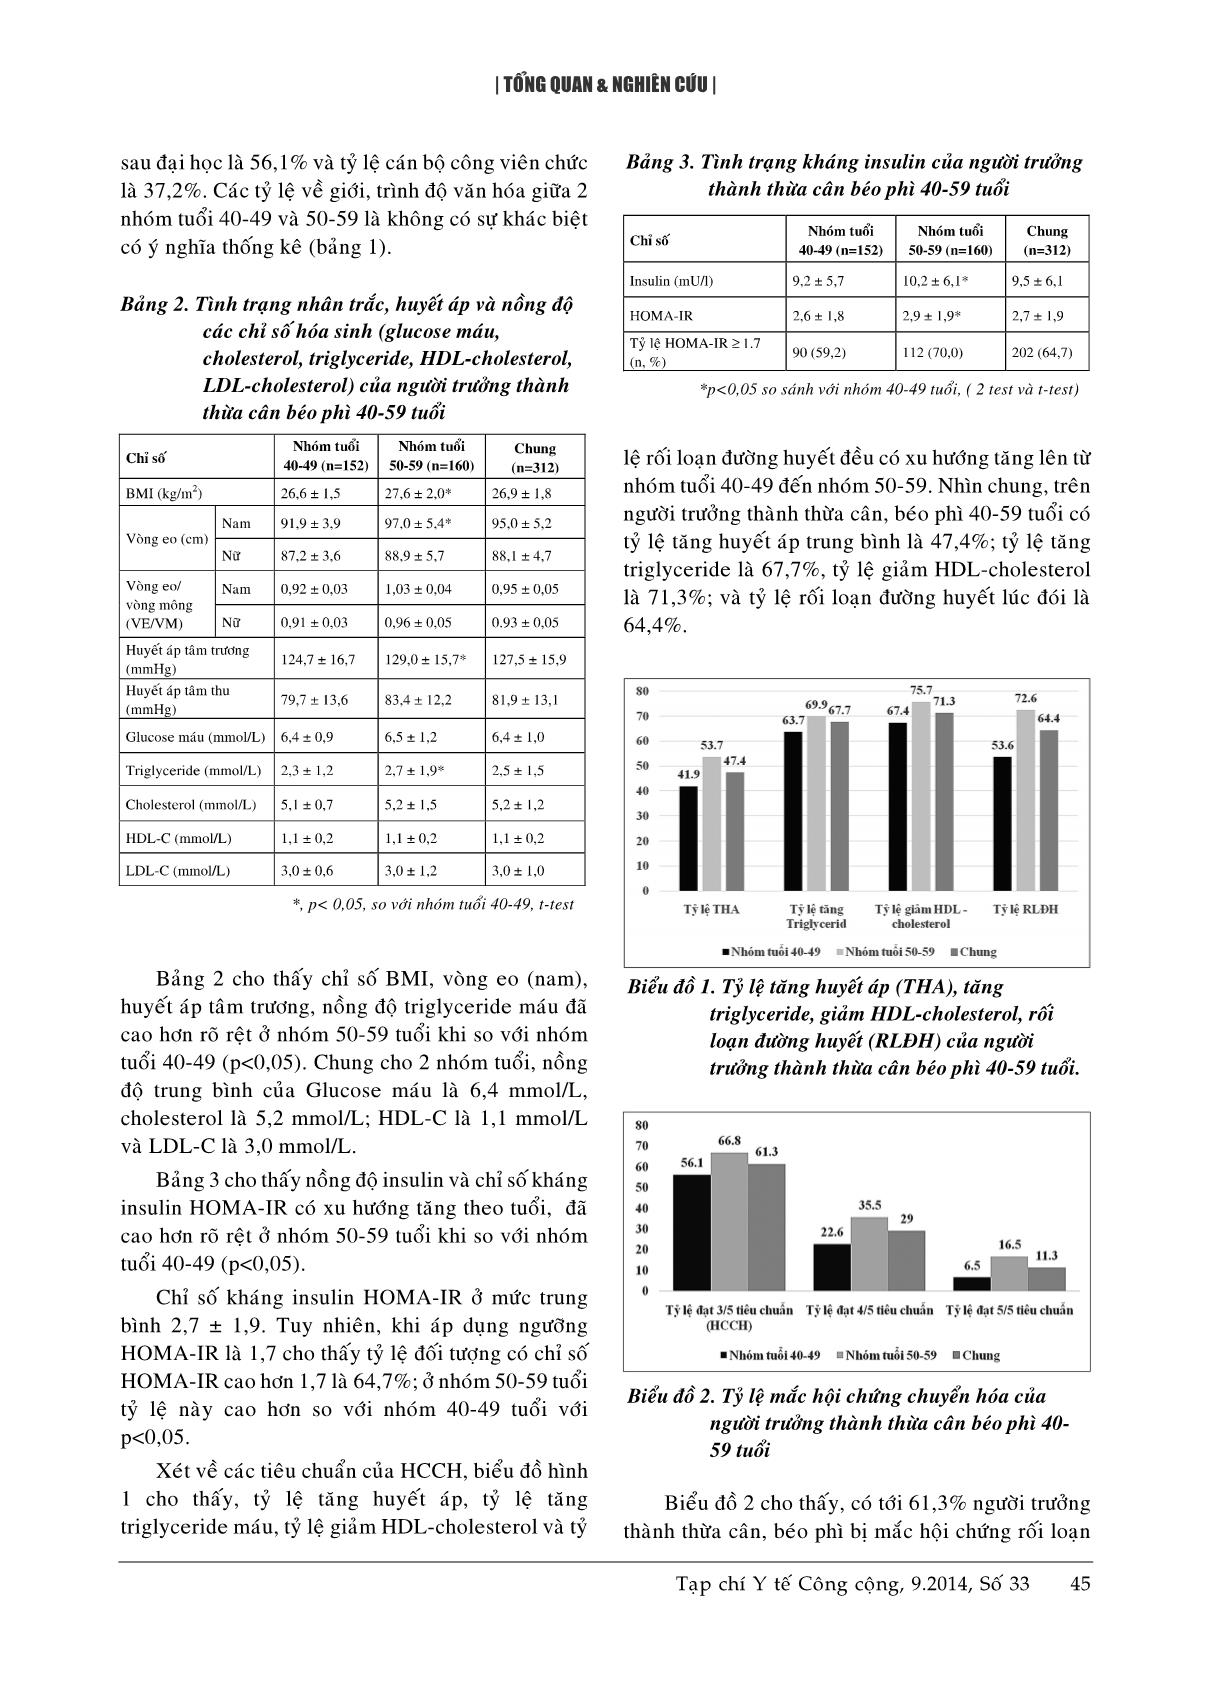 Tình trạng kháng Insulin và hội chứng rối loạn chuyển hóa ở người trưởng thành 40 - 59 tuổi thừa cân béo phì tại một phường nội thành Hà Nội trang 4